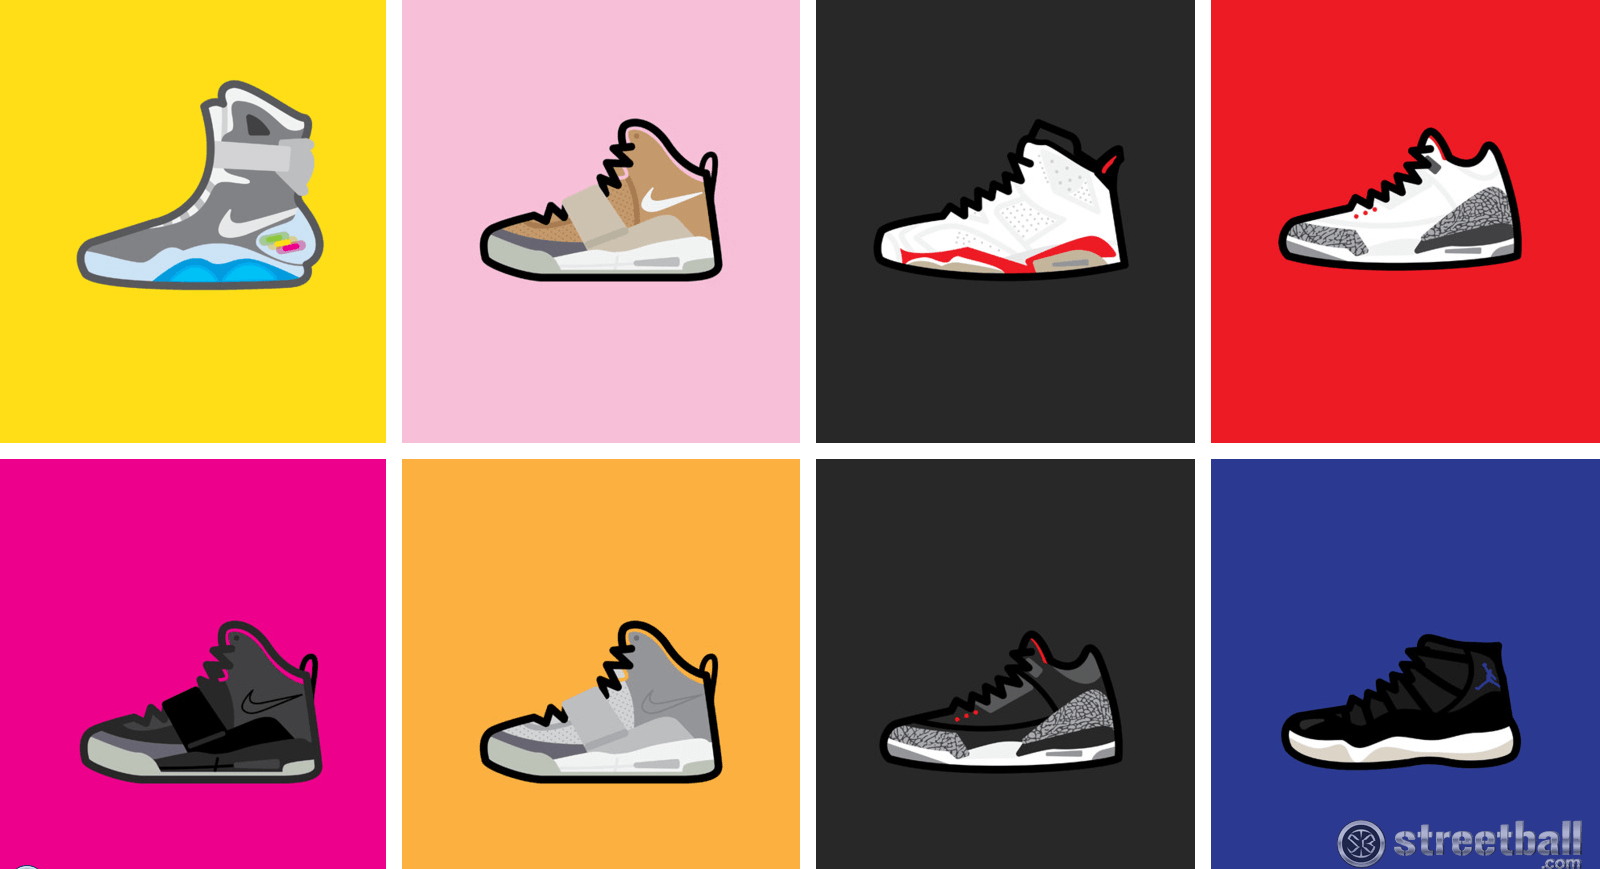 Download Free Air Jordan Shoes Wallpapers  PixelsTalkNet